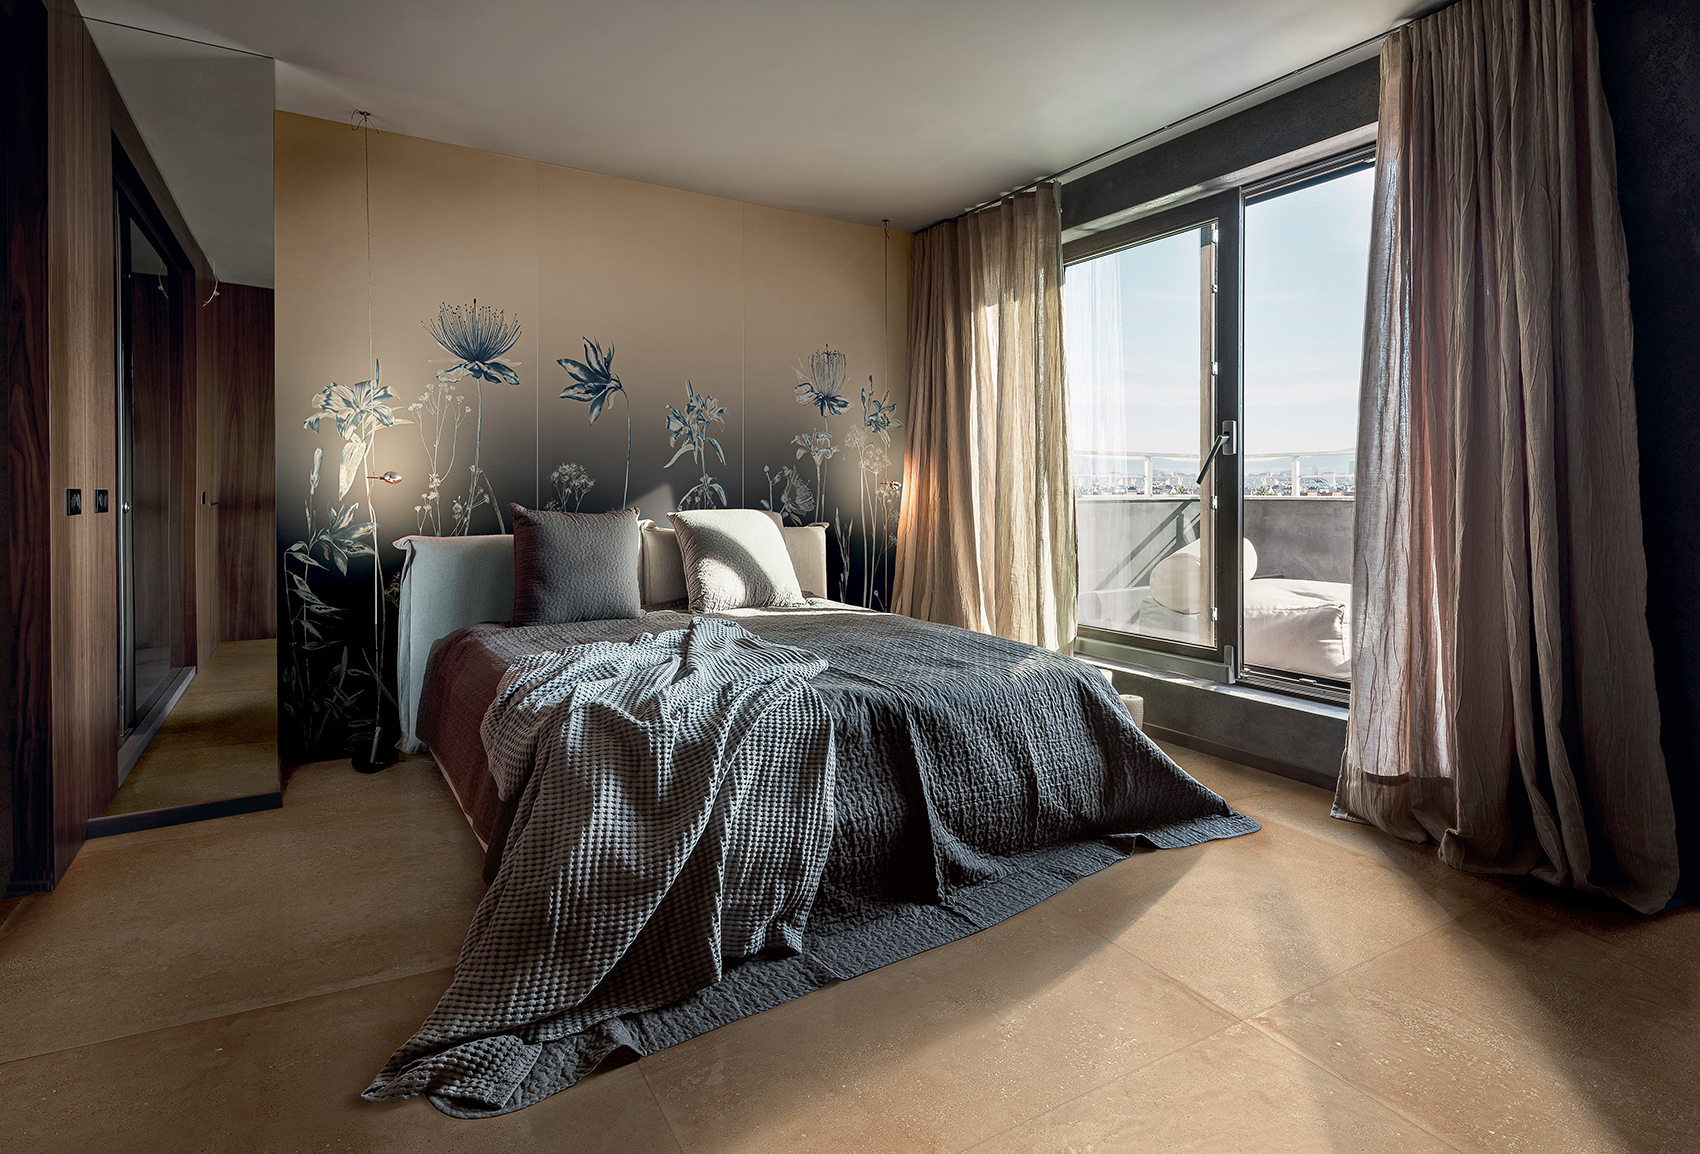 Cozy Bedroom In Contemporary Interior